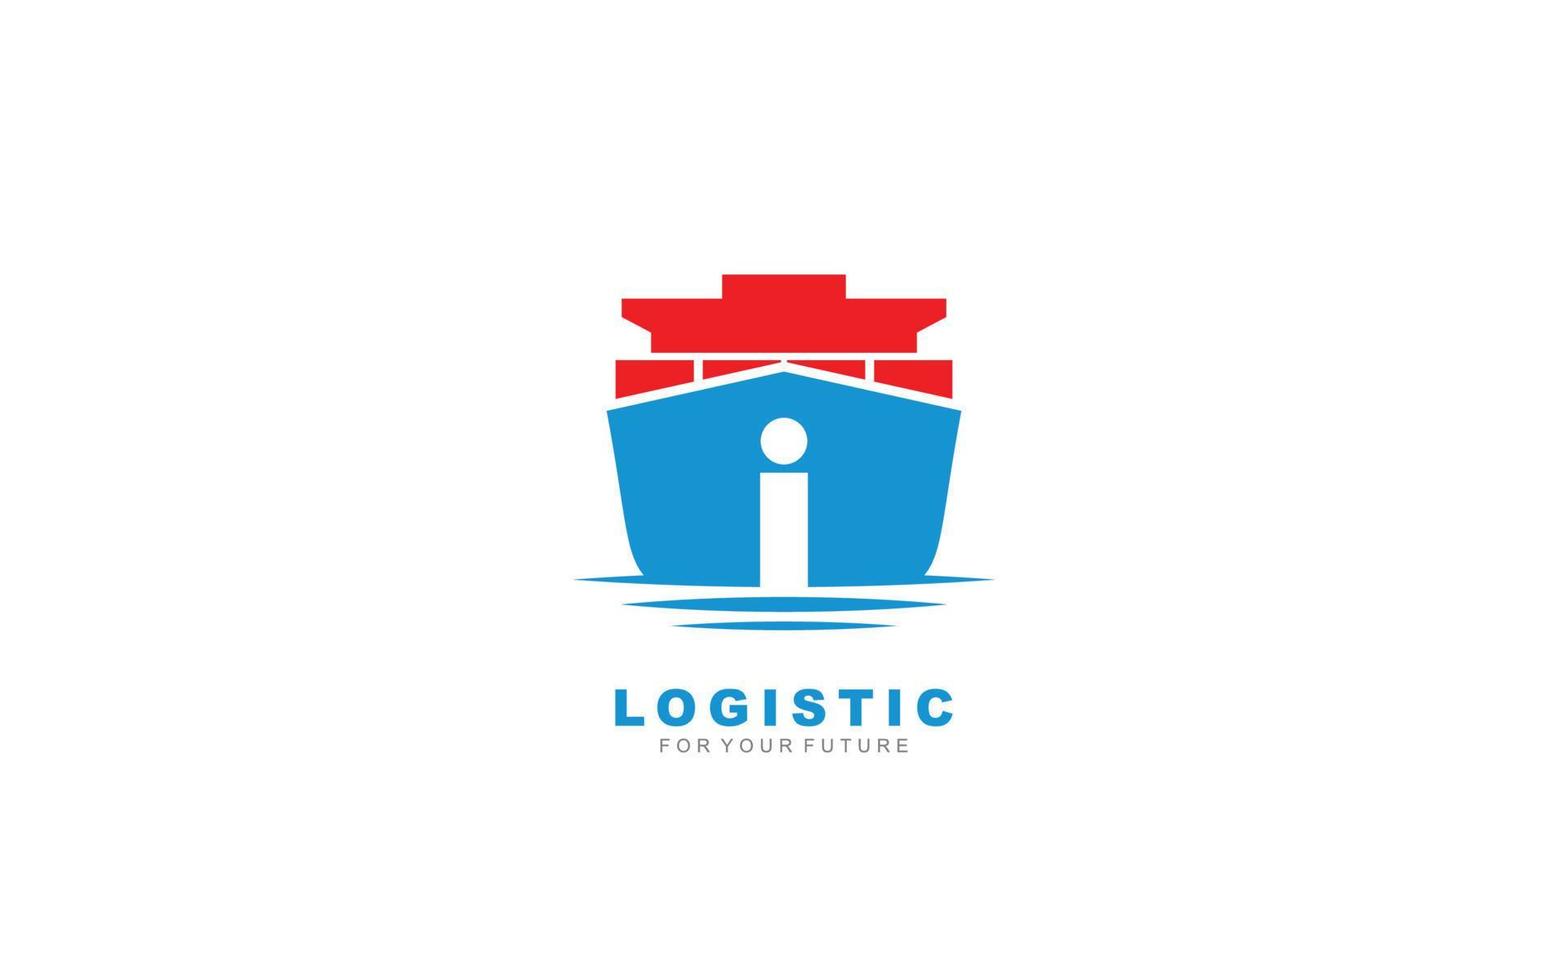 i logo logistic para empresa de marca. ilustración de vector de plantilla de envío para su marca.